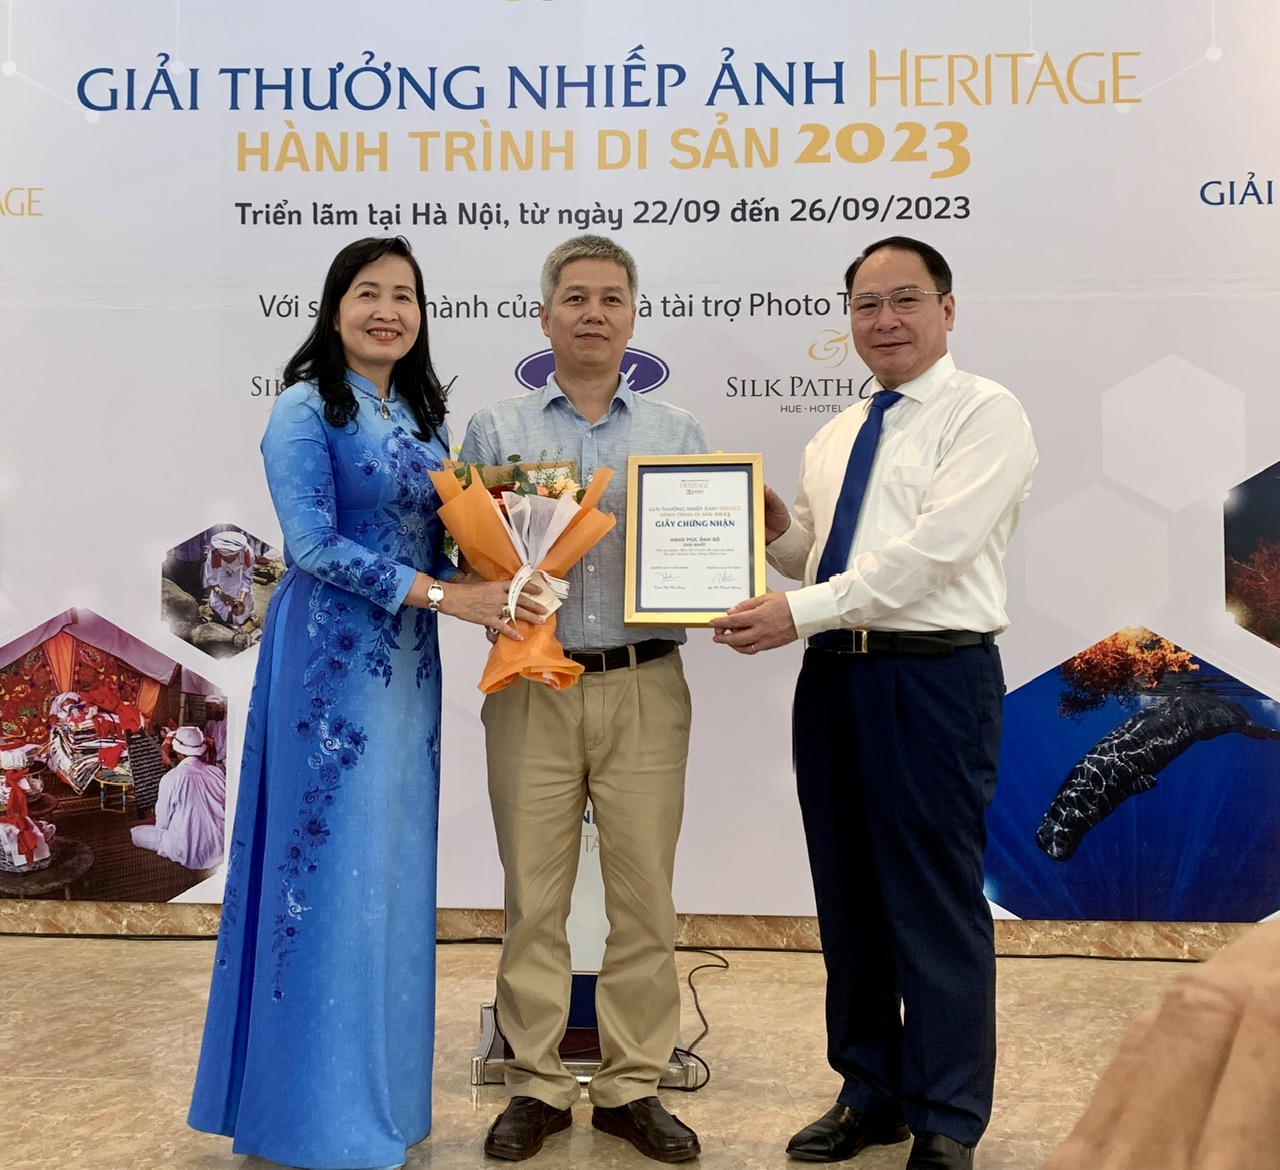 Ông Mã Thế Anh, Cục trưởng Cục Mỹ thuật Nhiếp ảnh Triển lãm, bà Trần Thị Thu Đông, Chủ tịch Hội Nghệ sĩ Nhiếp ảnh Việt Nam trao Giải Đặc biệt cho tác giả